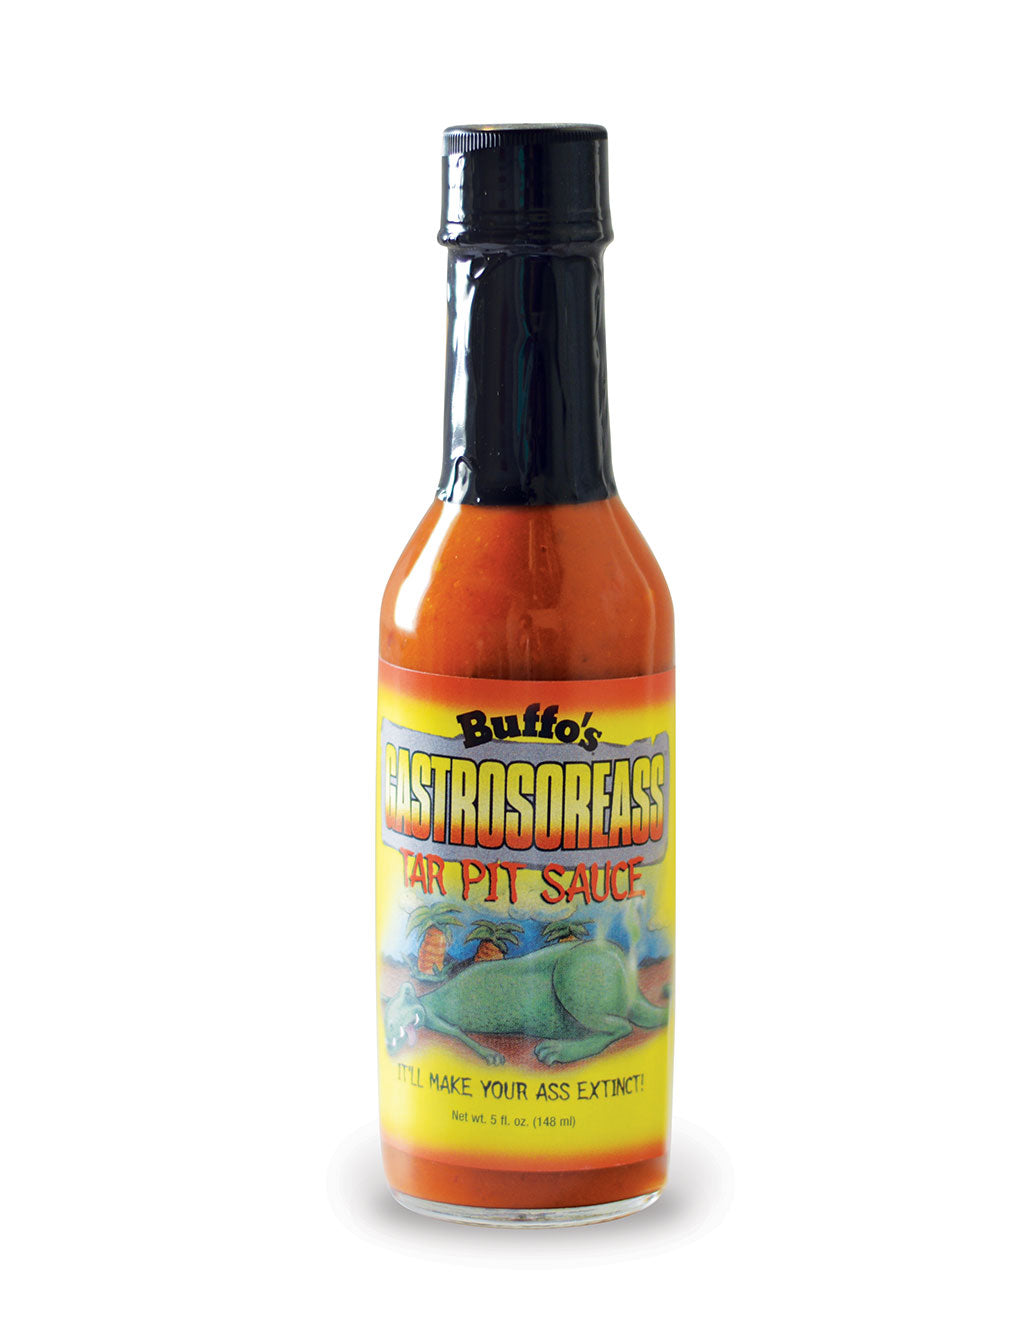 Buffo's Gastrosoreass Garlic Sriracha Sauce